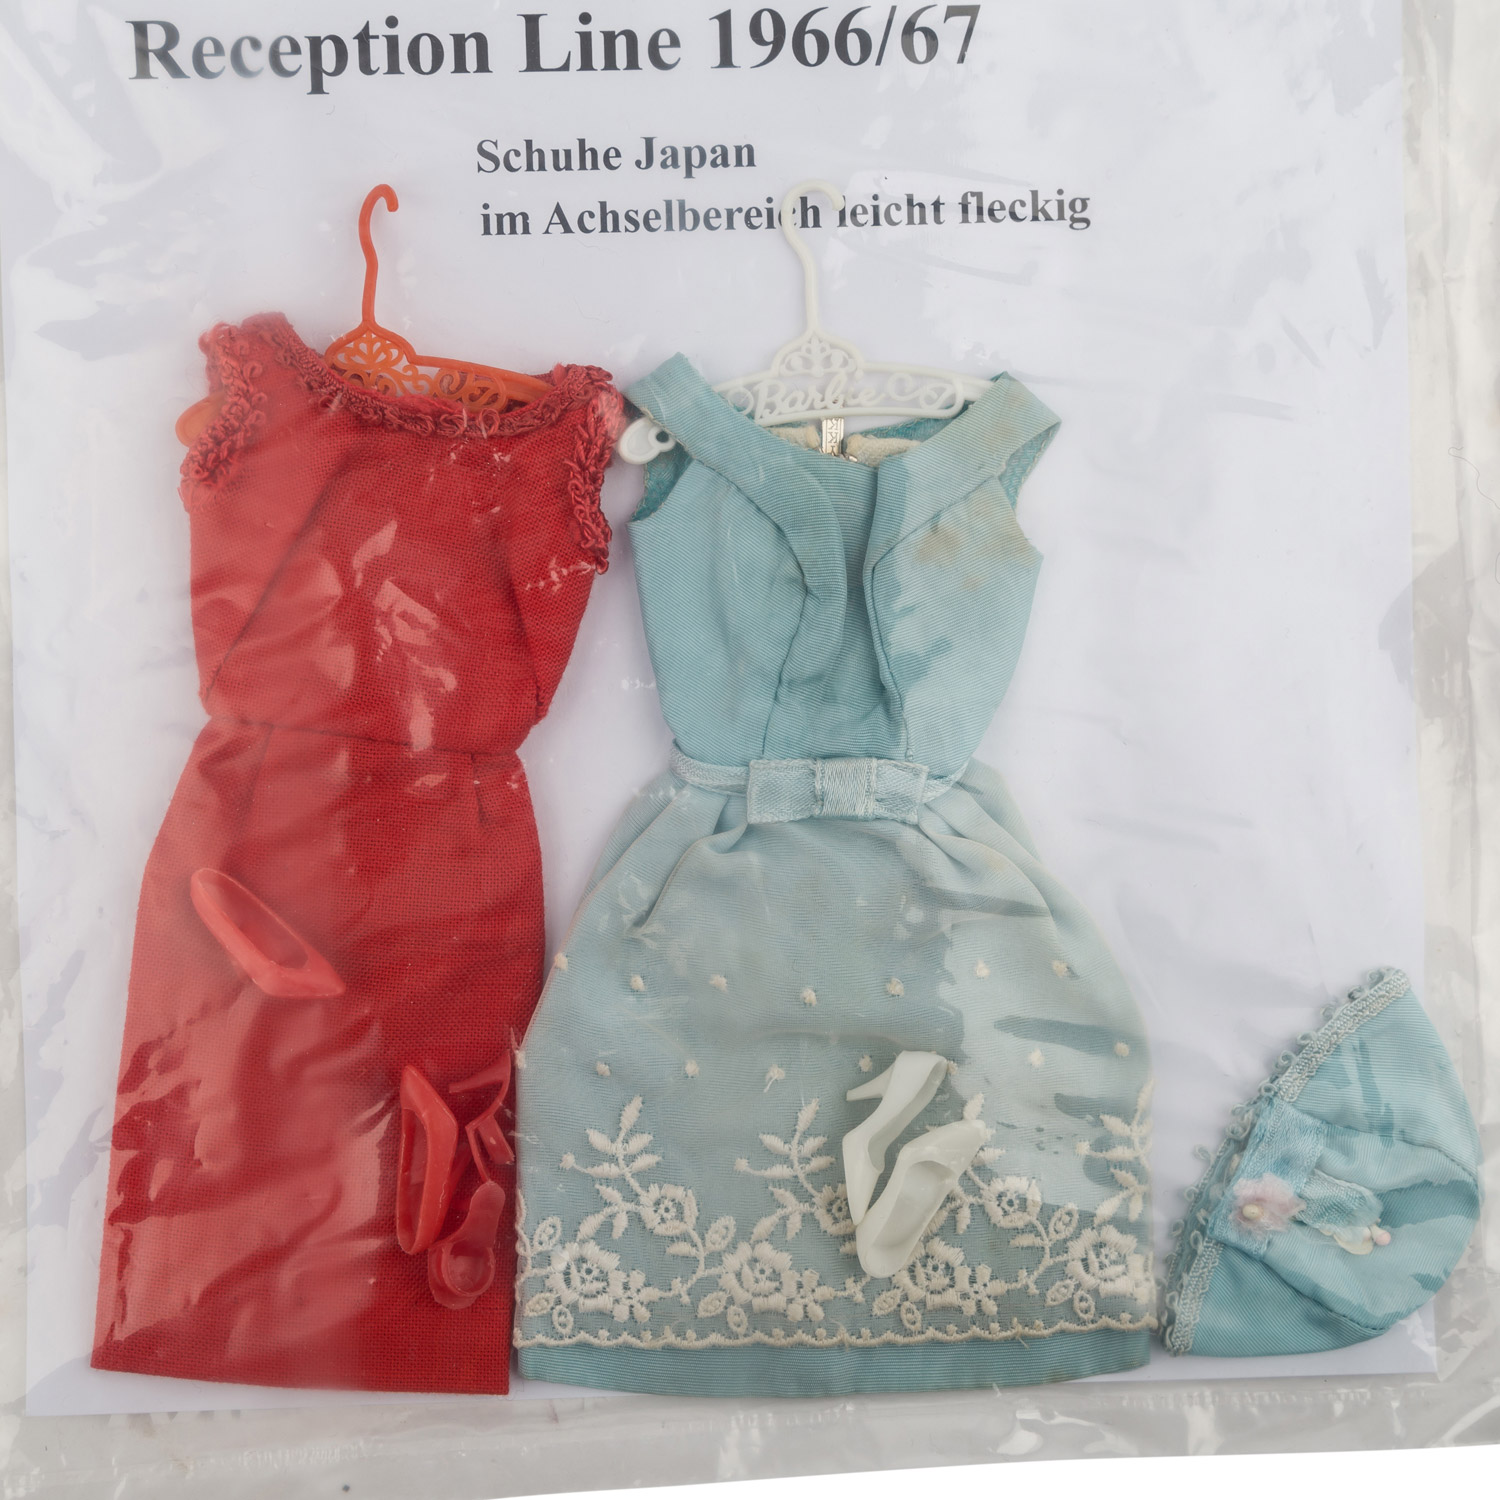 MATTEL u.a. Bekleidung und Zubehör, meist 1960er/70er Jahre,u.a. Outfit Reception Line, Red - Image 3 of 9